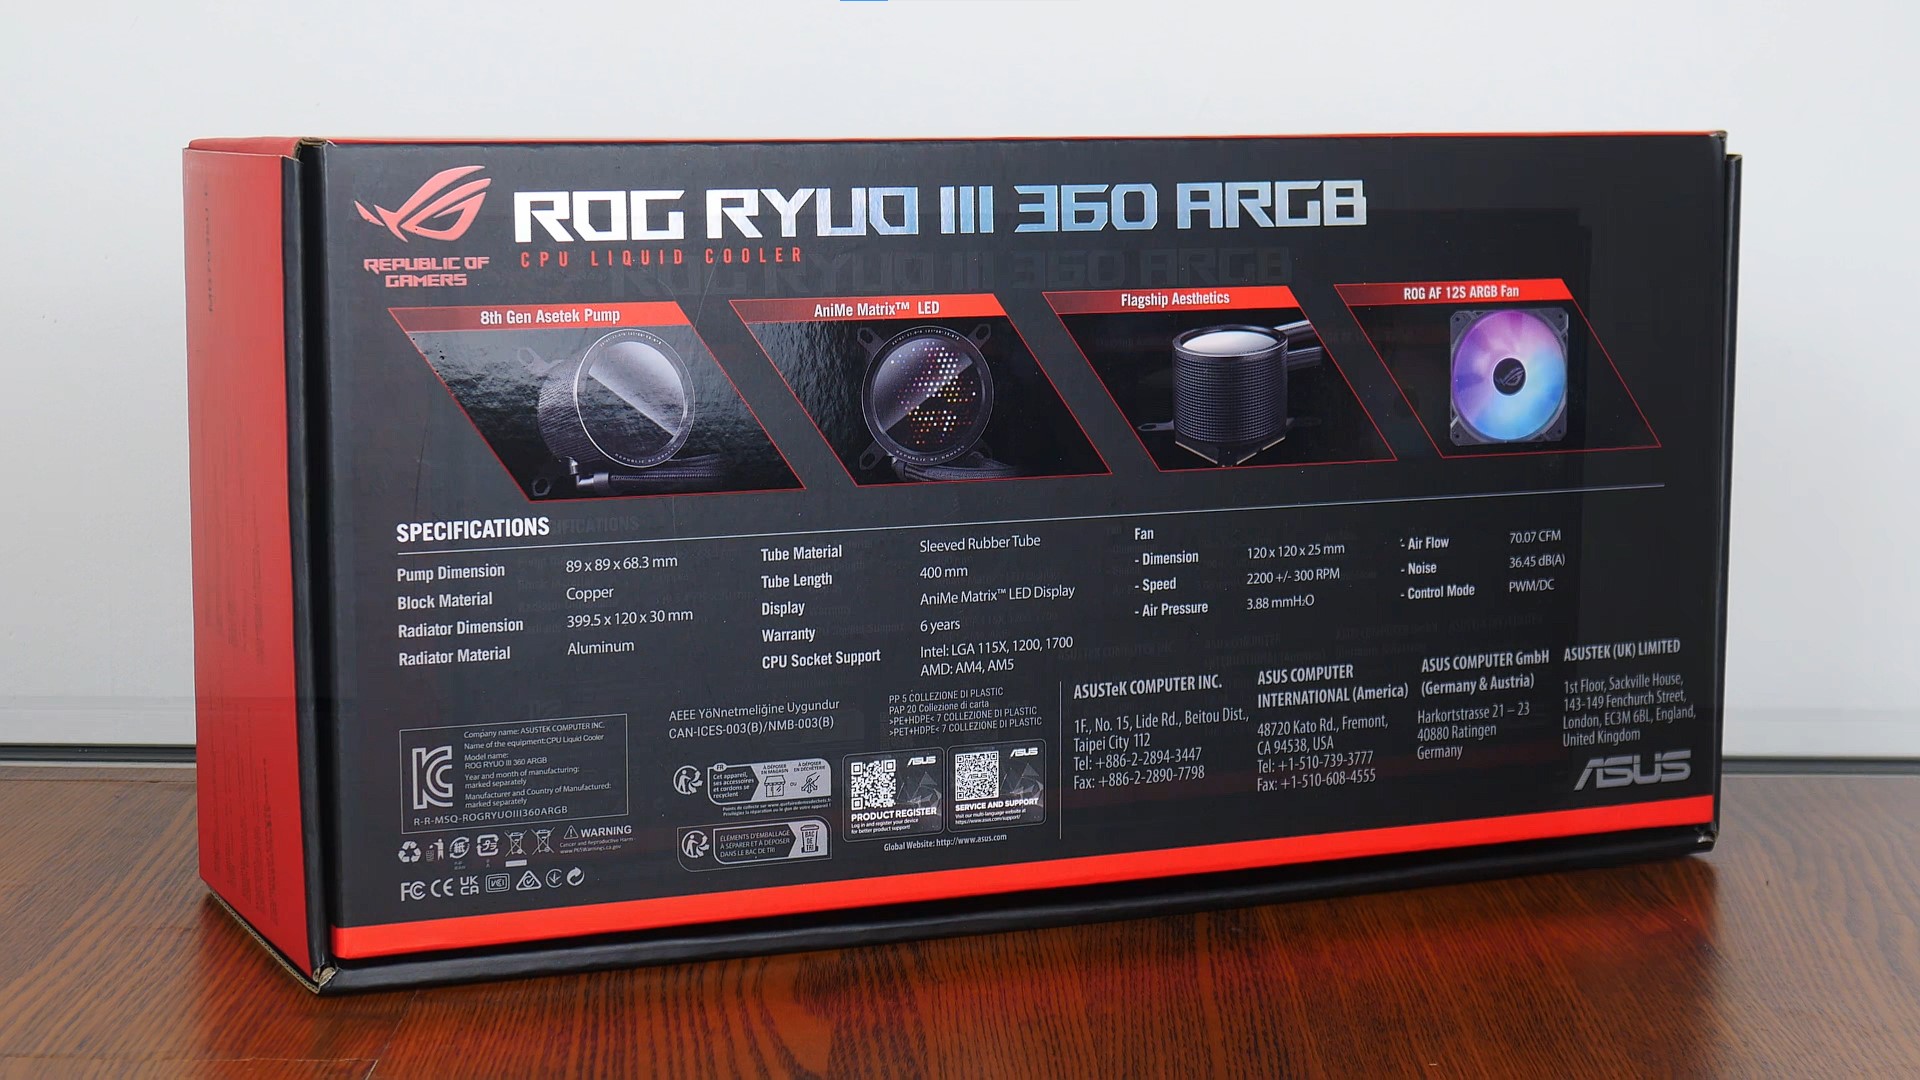 ASUS ROG RYUO III 360 Packaging (Rear)